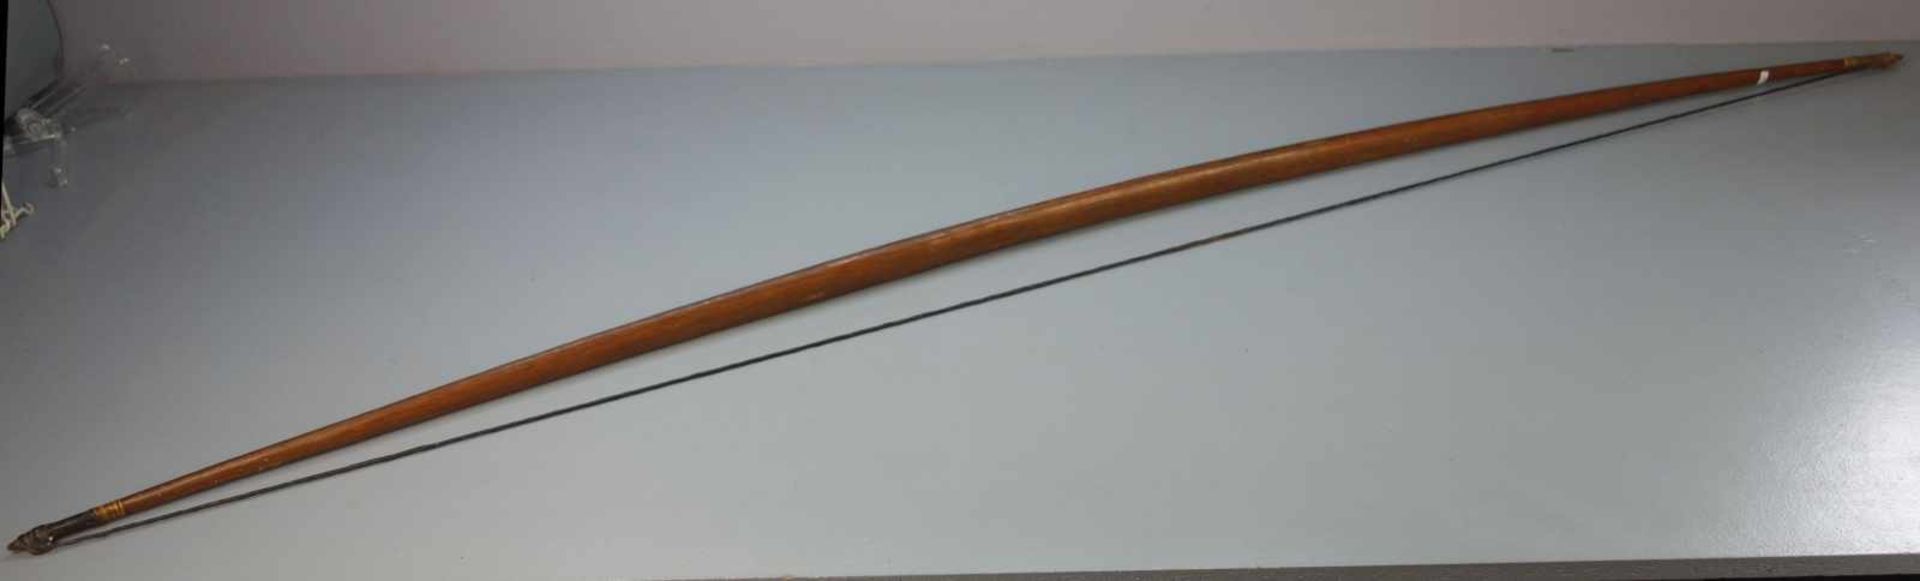 BOGEN / bow, Holz, wohl Papua Neuguinea, 20. Jh.; Bogenrücken braun gefasst, Bogenbauch lasiert. - Bild 2 aus 5